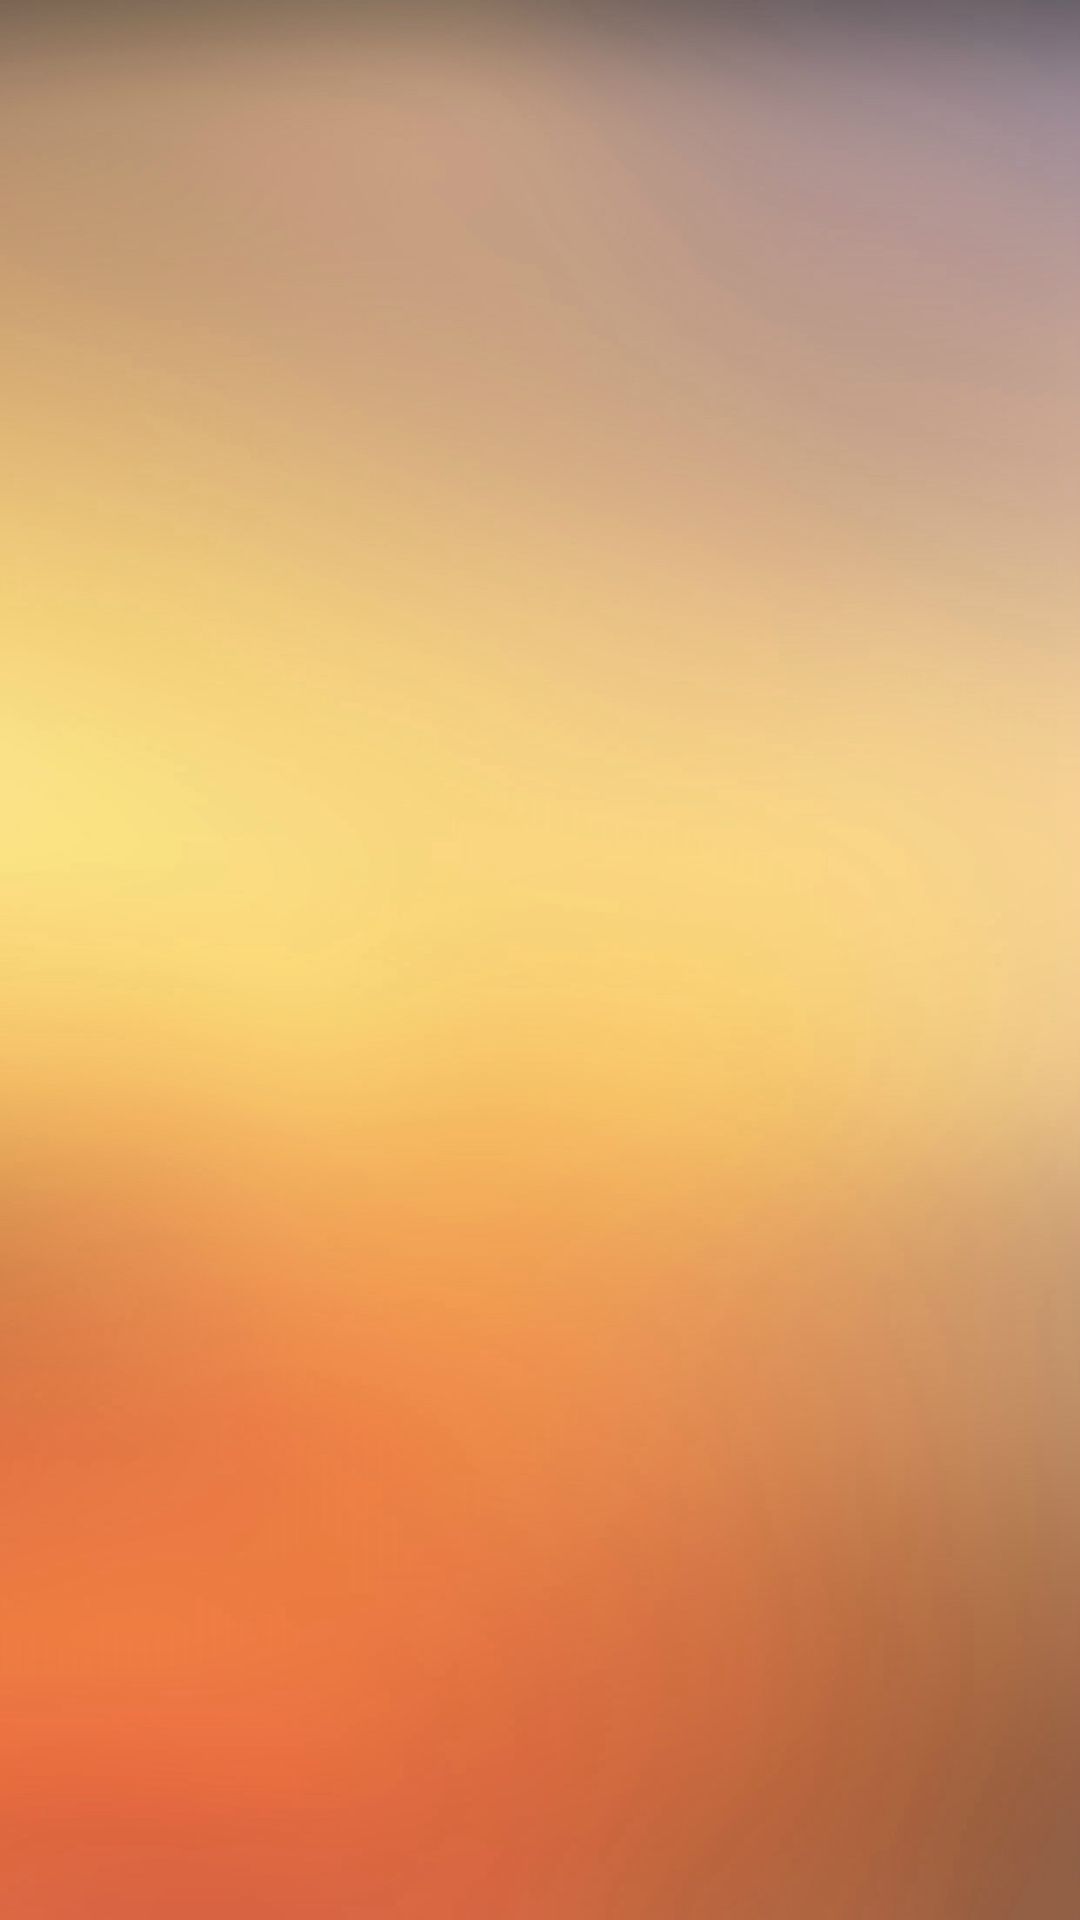 Sunset Fire Gradation Blur iPhone 6 Wallpaper Download iPhone